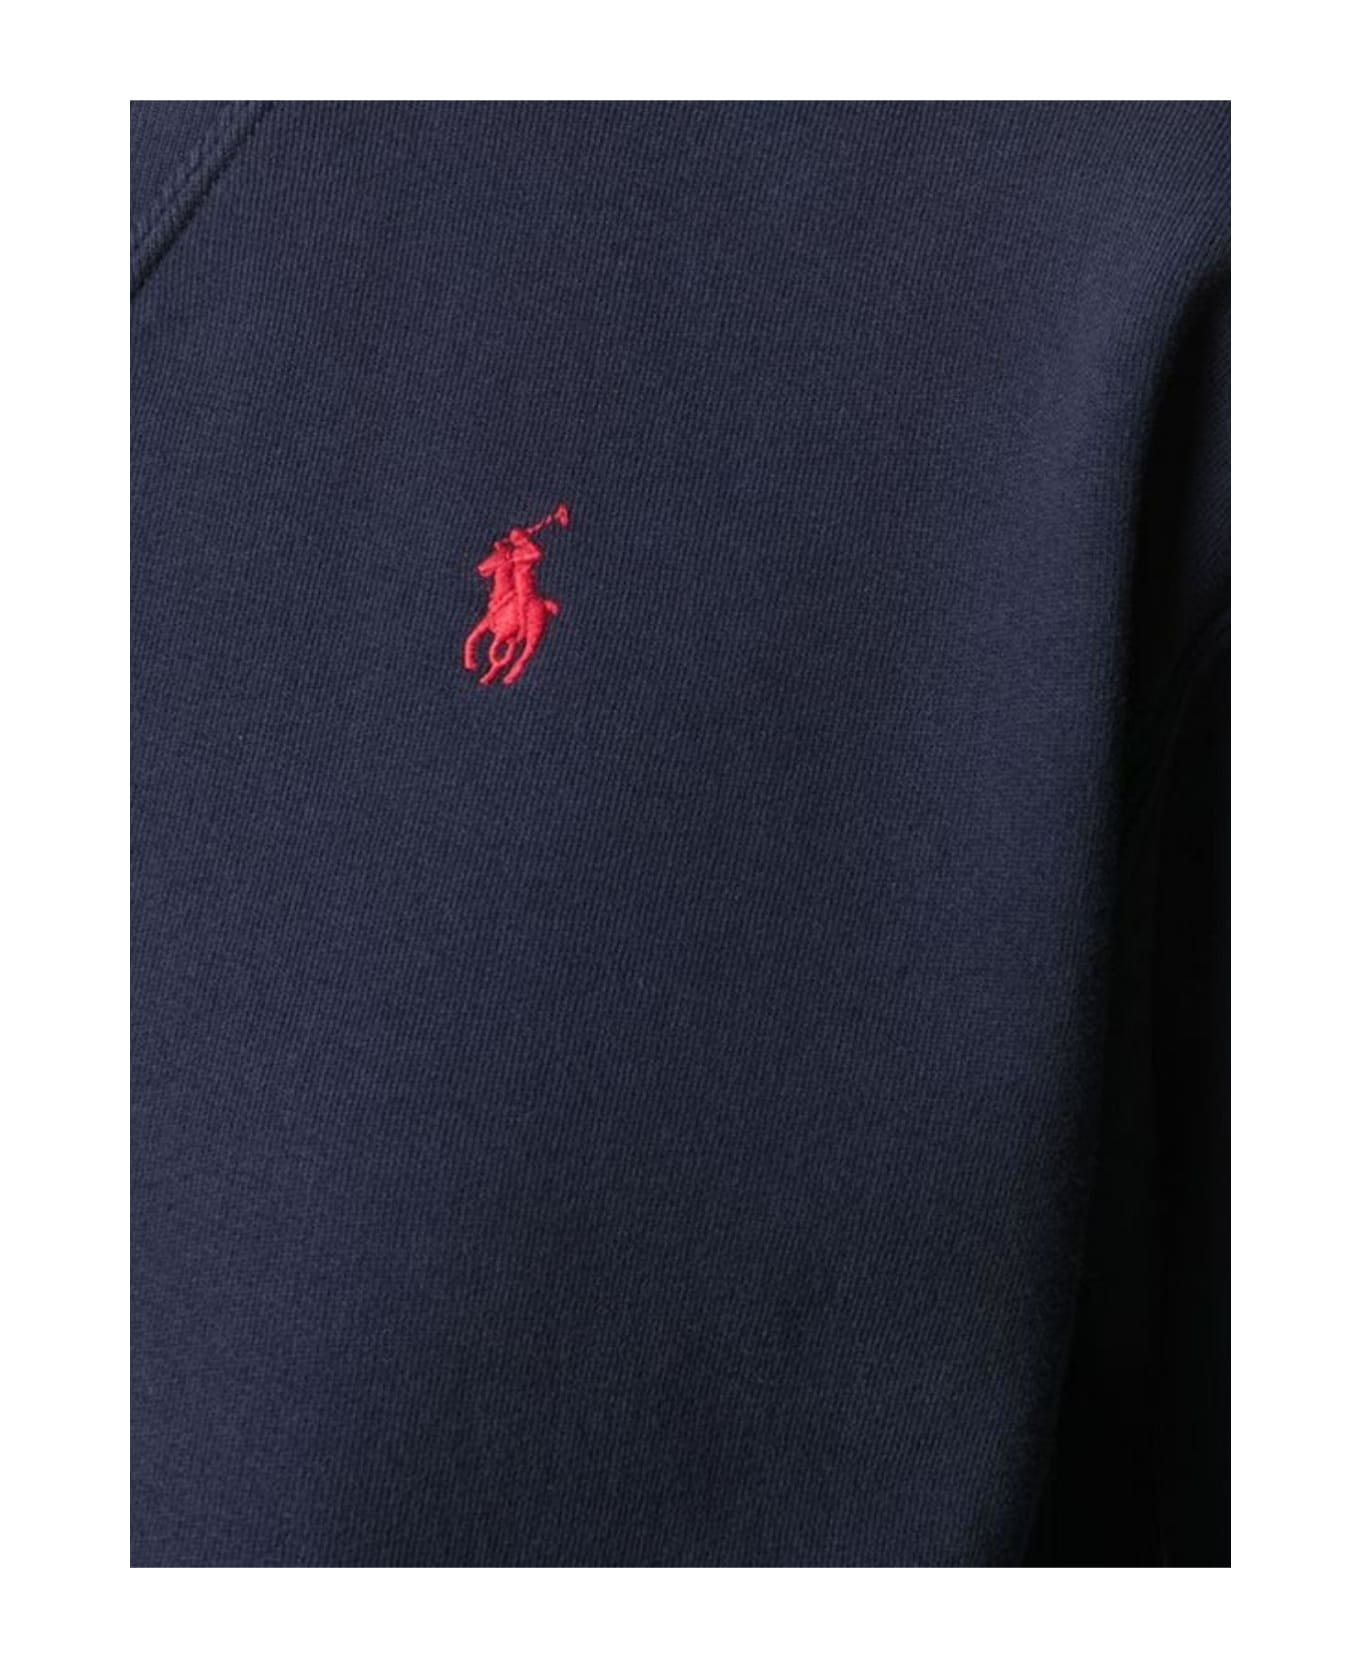 Ralph Lauren Pony Embroidered Crewneck Sweatshirt